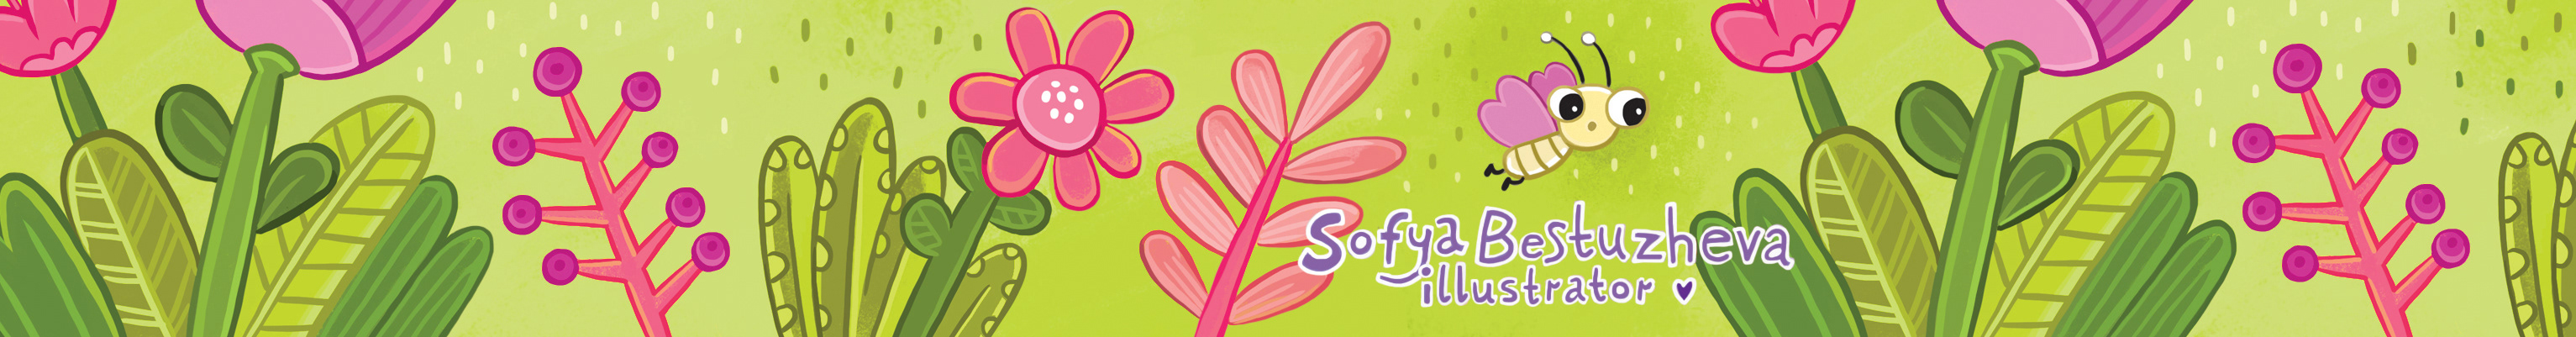 Banner de perfil de Sofya Bestuzheva